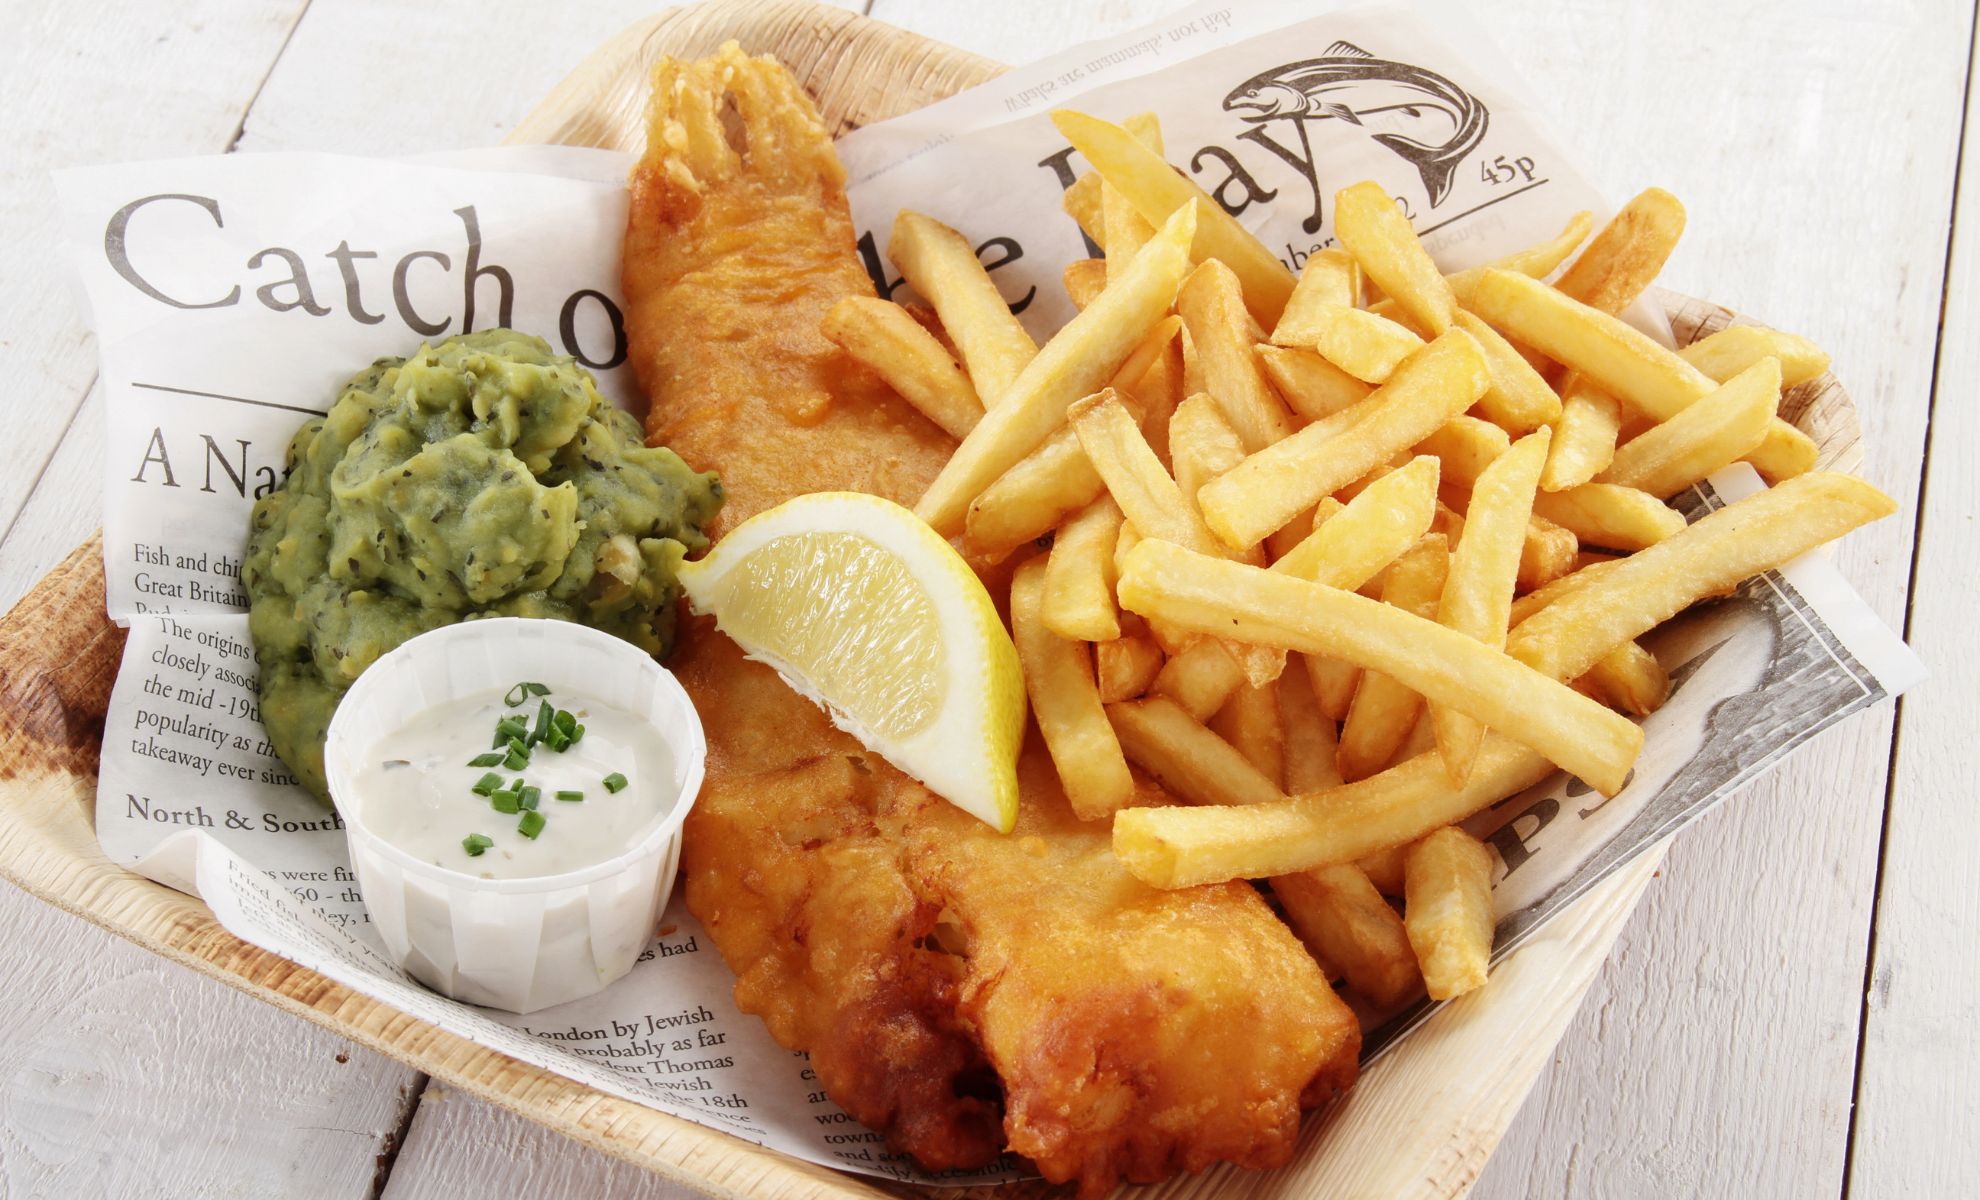 Le fish & chips plat gastronomique anglais